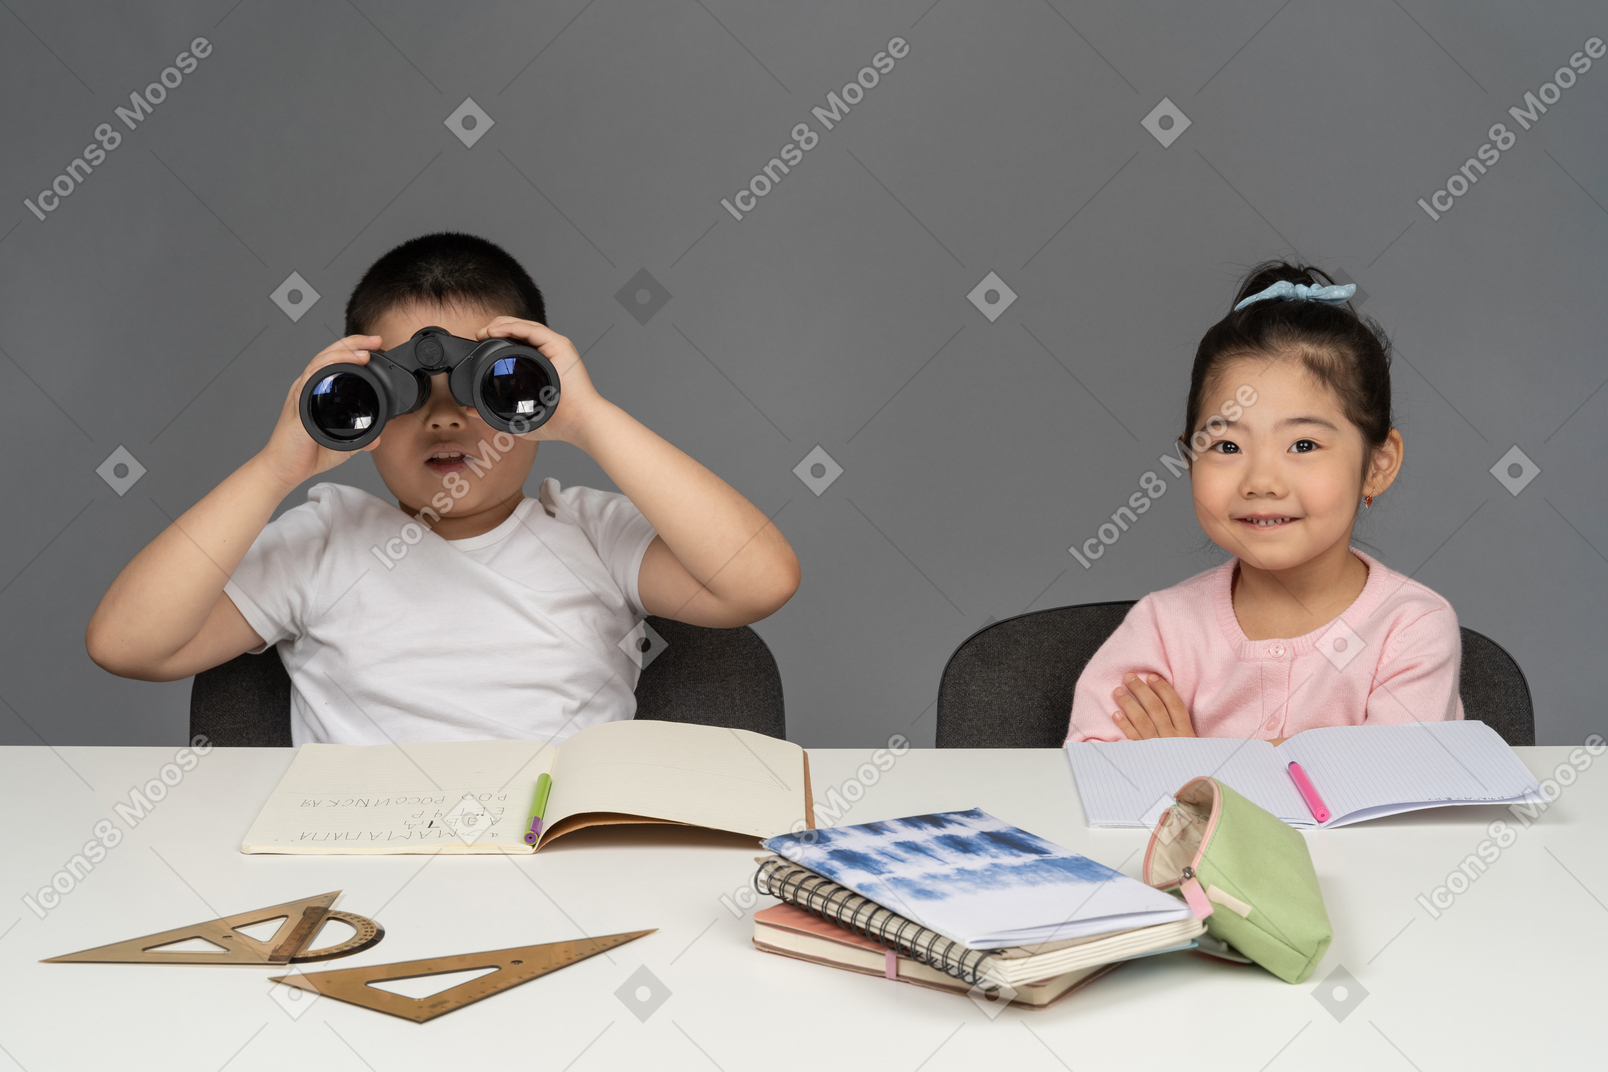 双眼鏡で見ている笑顔の少女と少年